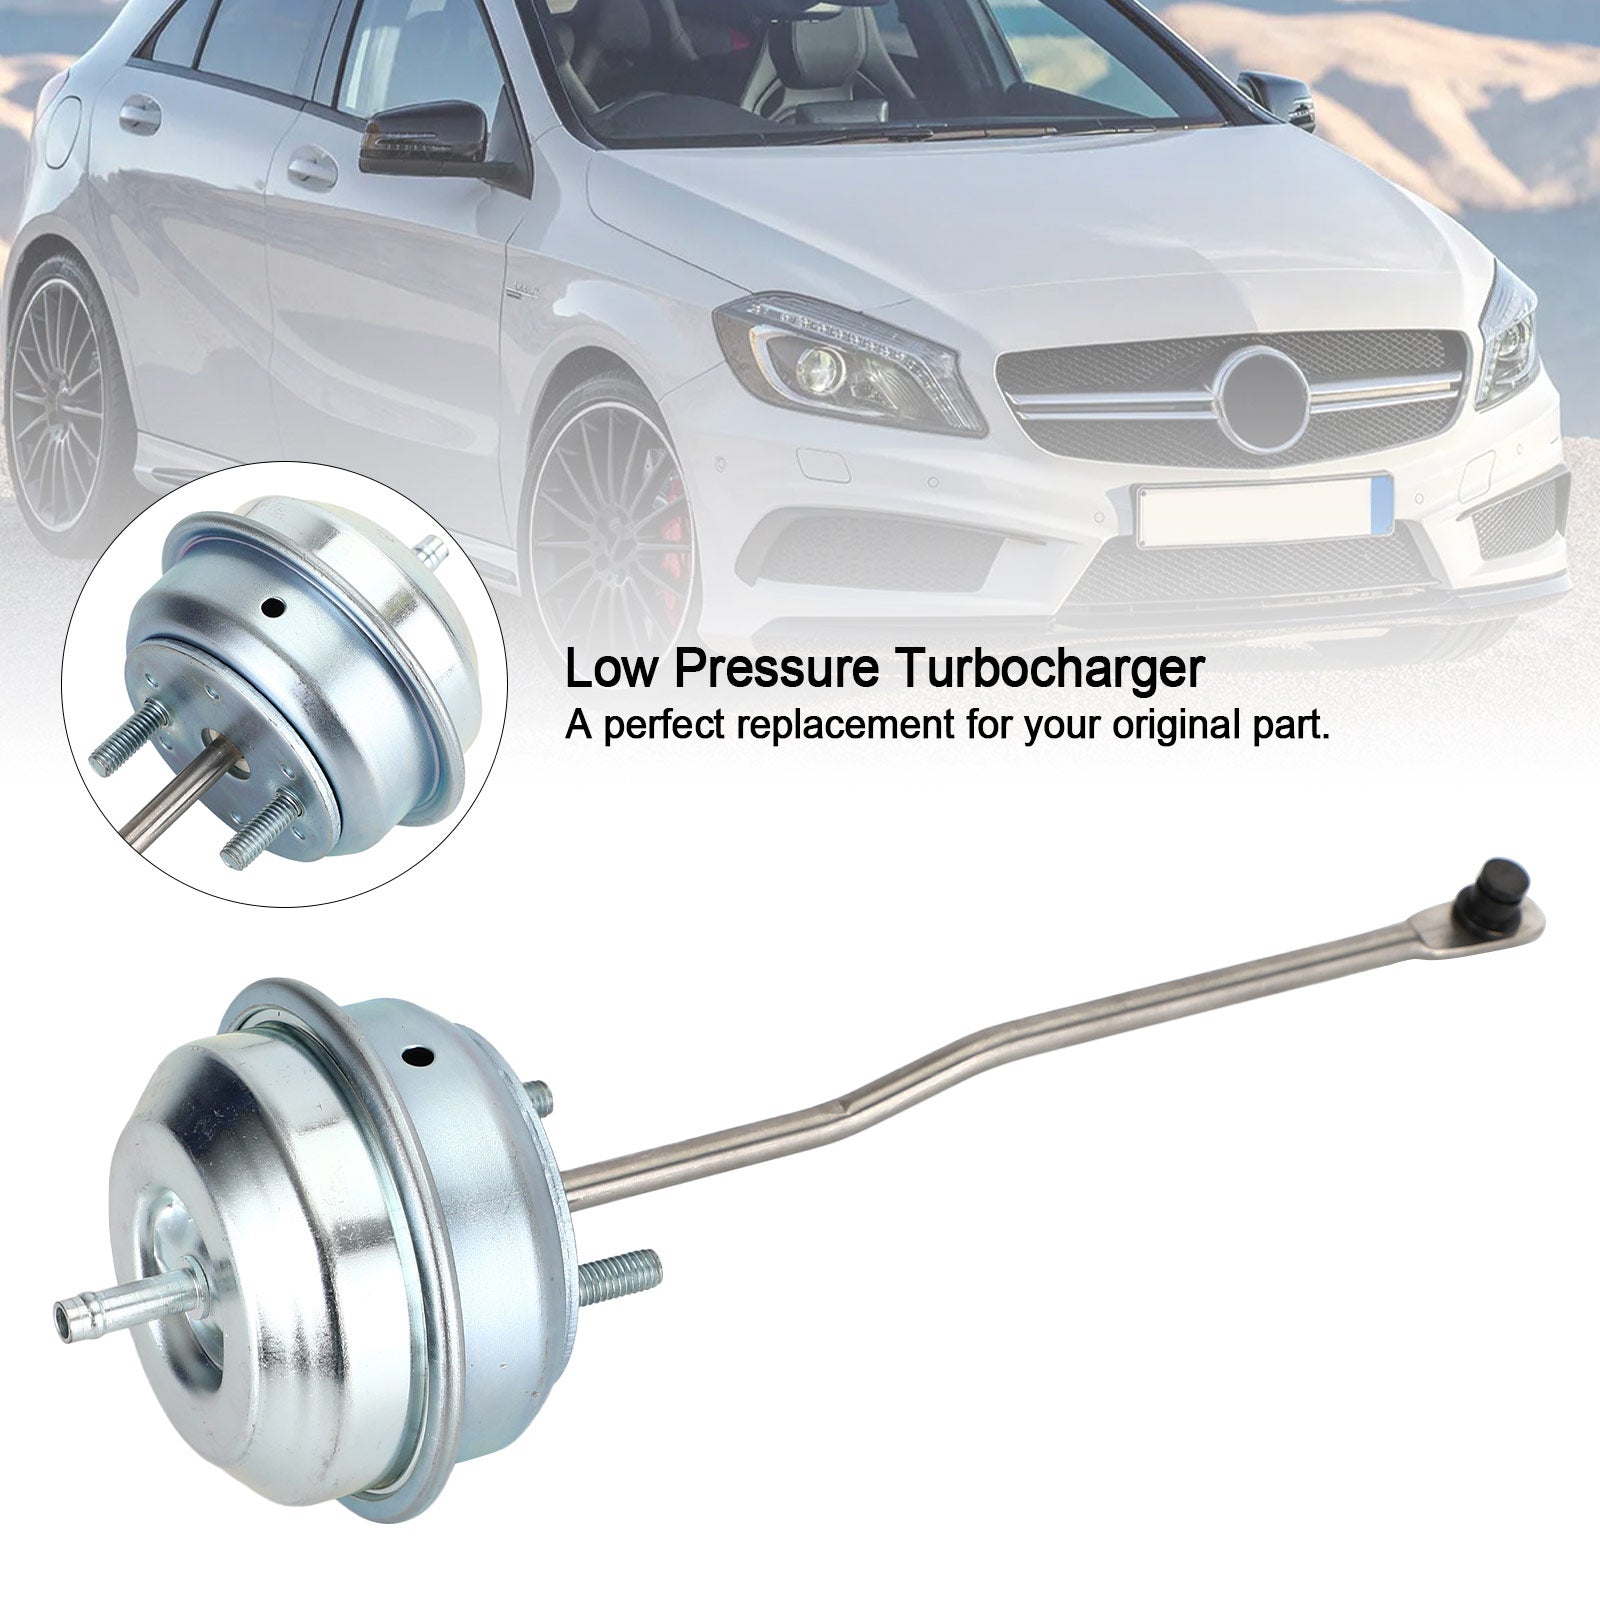 Turbocompresor de baja presión para Mercedes-Benz W176 W246 C117 X117 X156 genérico A2700902280